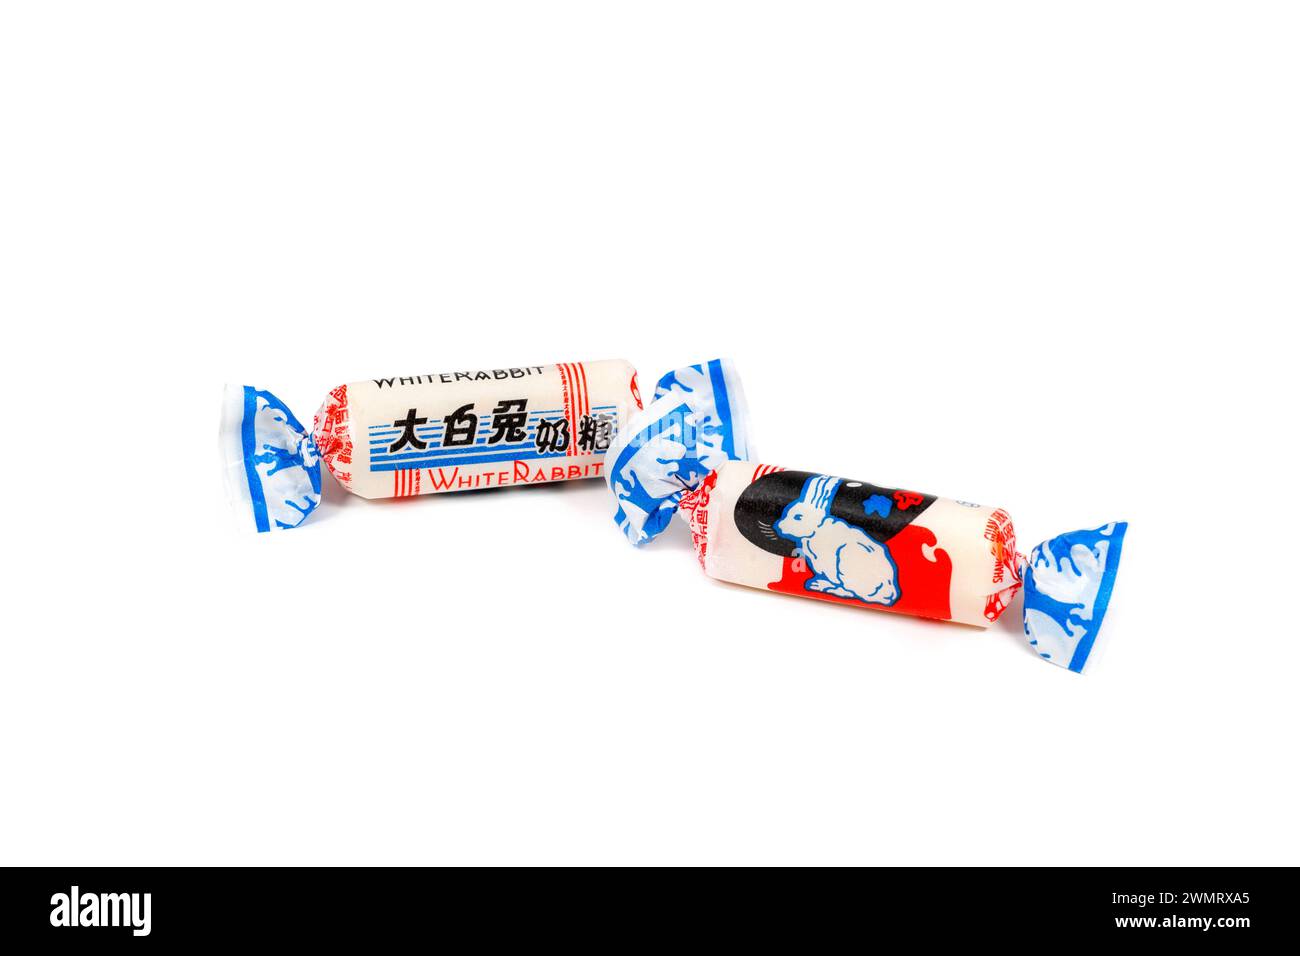 White Rabbit Candy 大白兔奶糖 confiserie chinoise de bonbons au lait isolé sur un fond blanc. image découpée pour illustration et usage éditorial. Banque D'Images